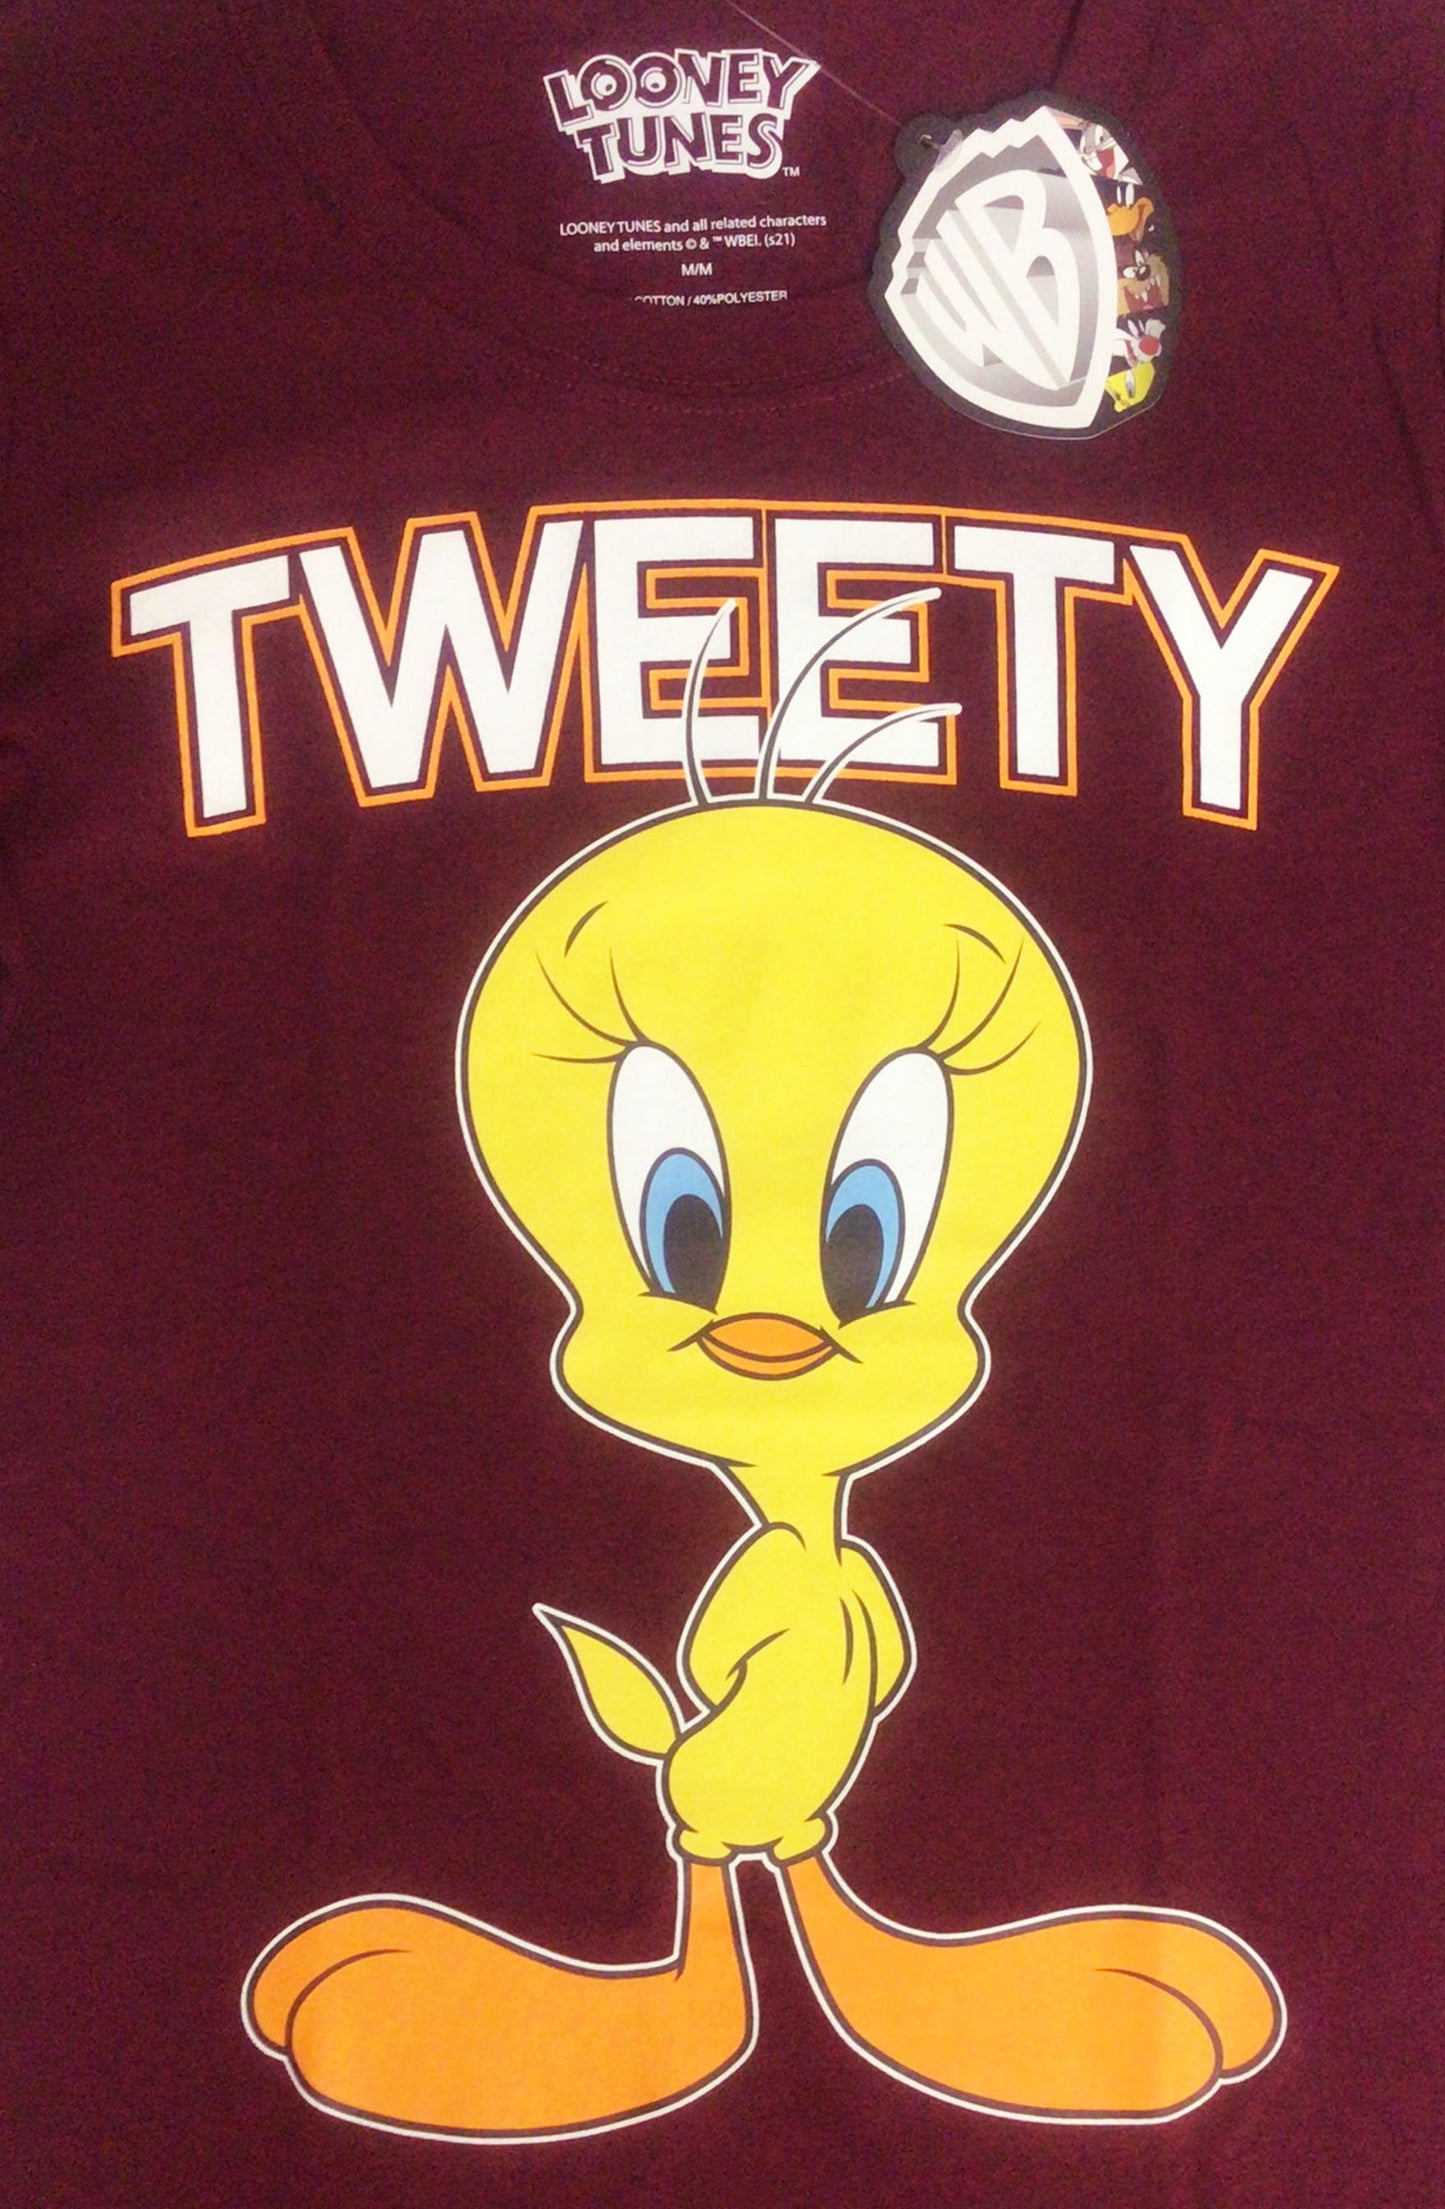 Women's T-shirt Tweety Tee Looney Tunes Burgundy Cotton S M L XL